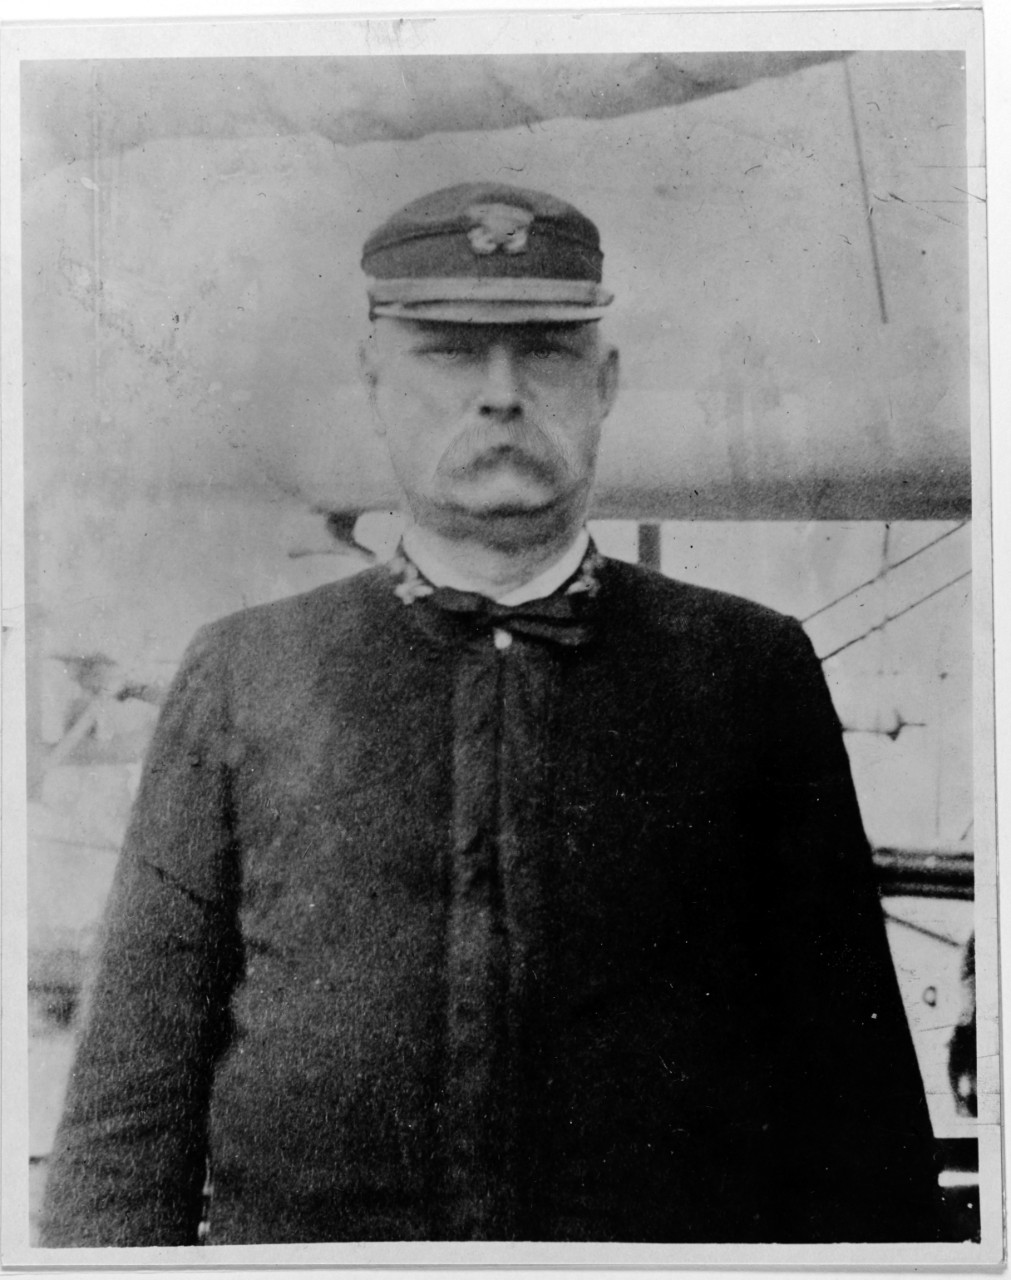 Captain Edward E. Potter, USN